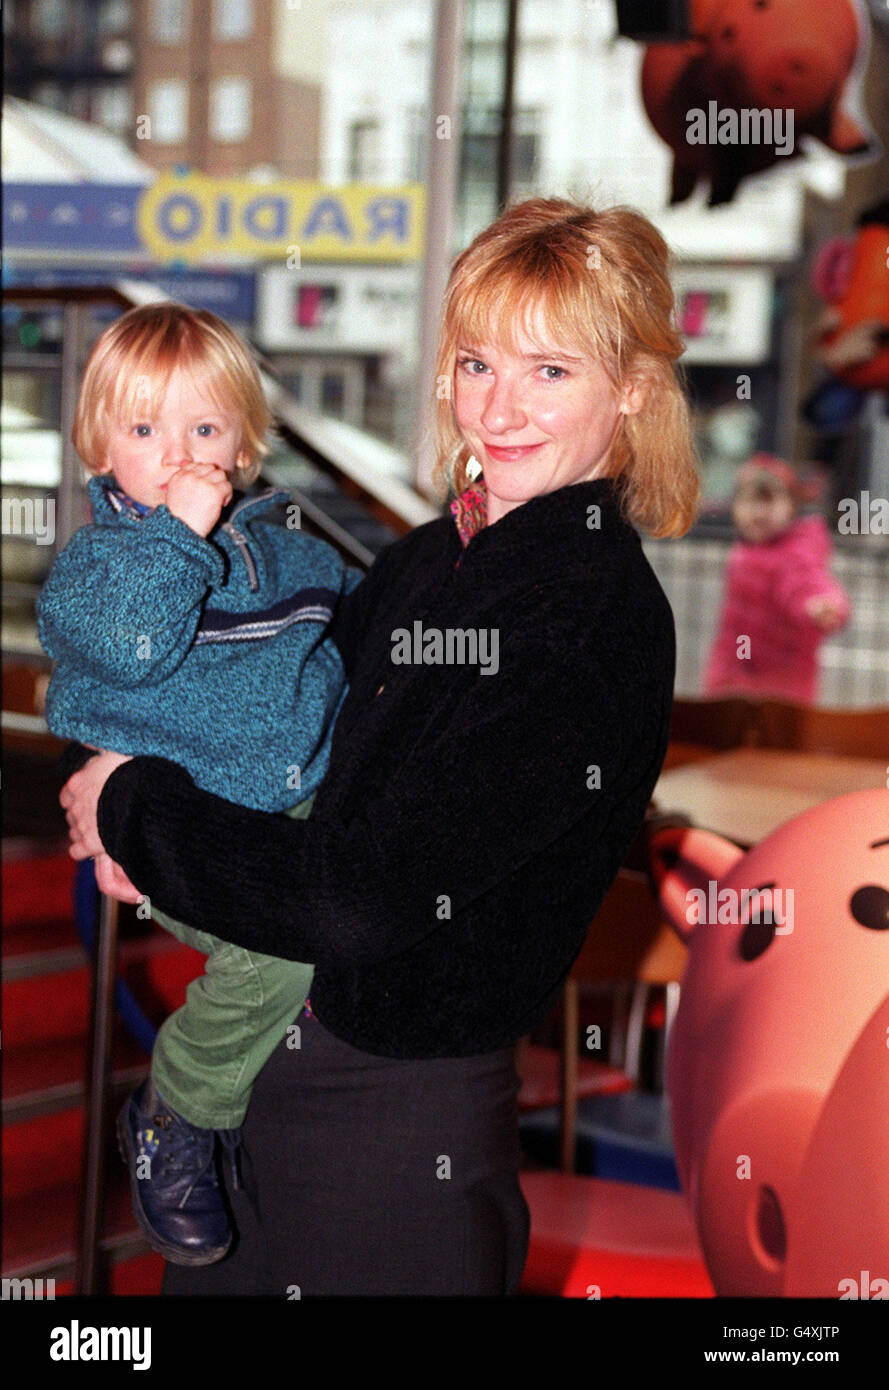 L'actrice Jane Horrocks avec son fils de deux ans Dylan, lors de la première du film britannique Toy Story 2 au Warner Village Cinema de Finchley, Londres. Banque D'Images